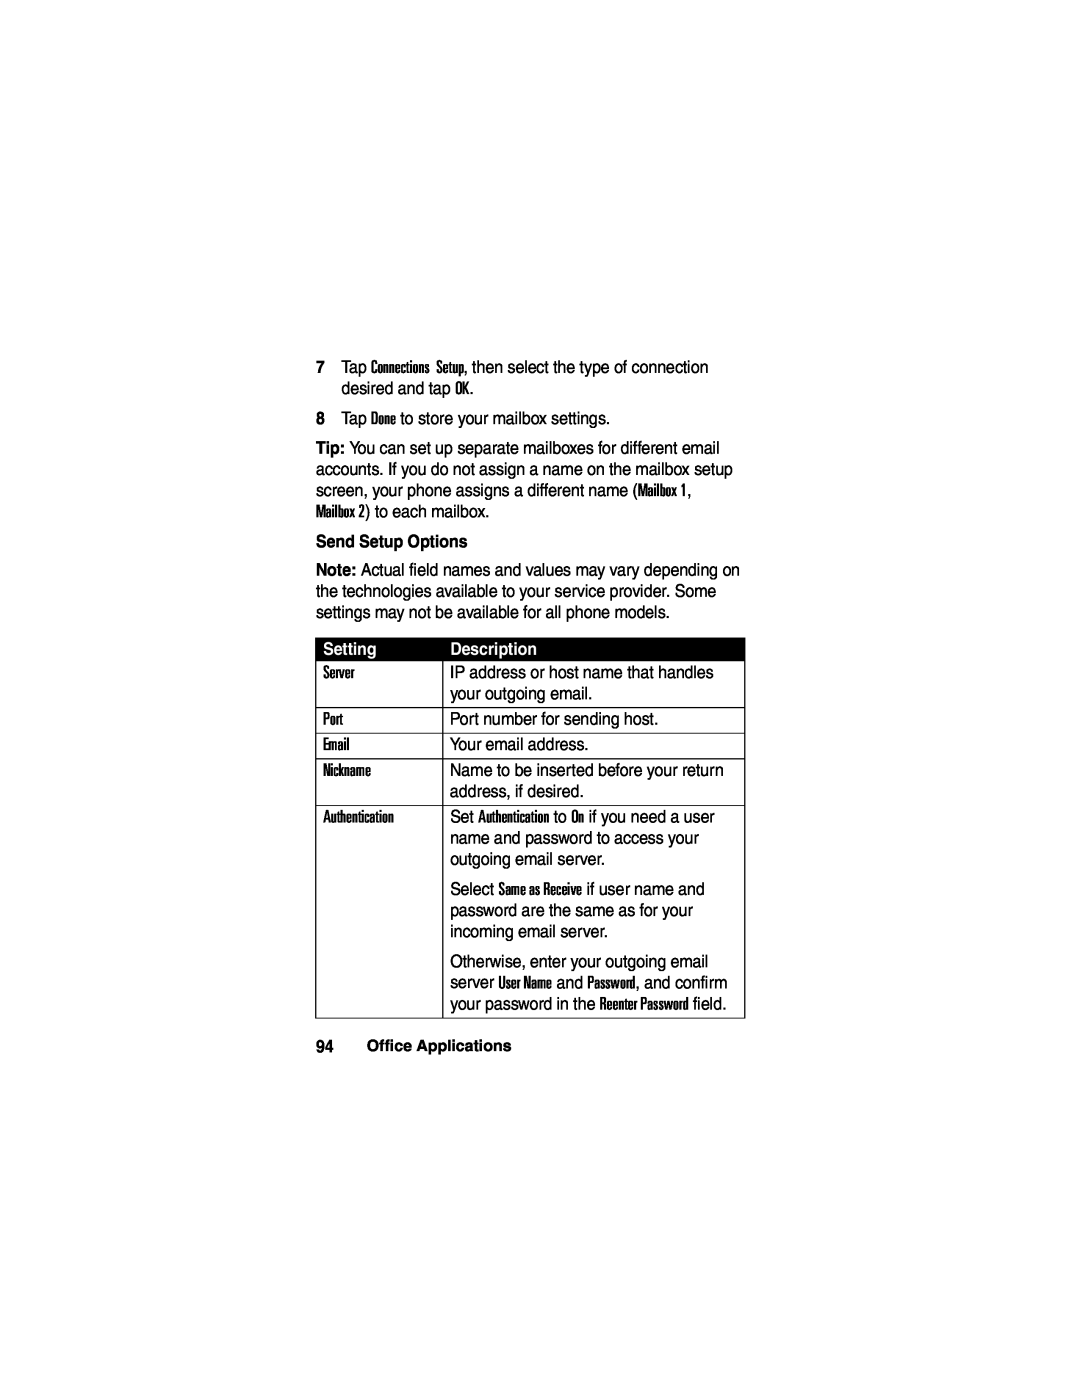 Motorola A780 manual Send Setup Options, Setting, Description 